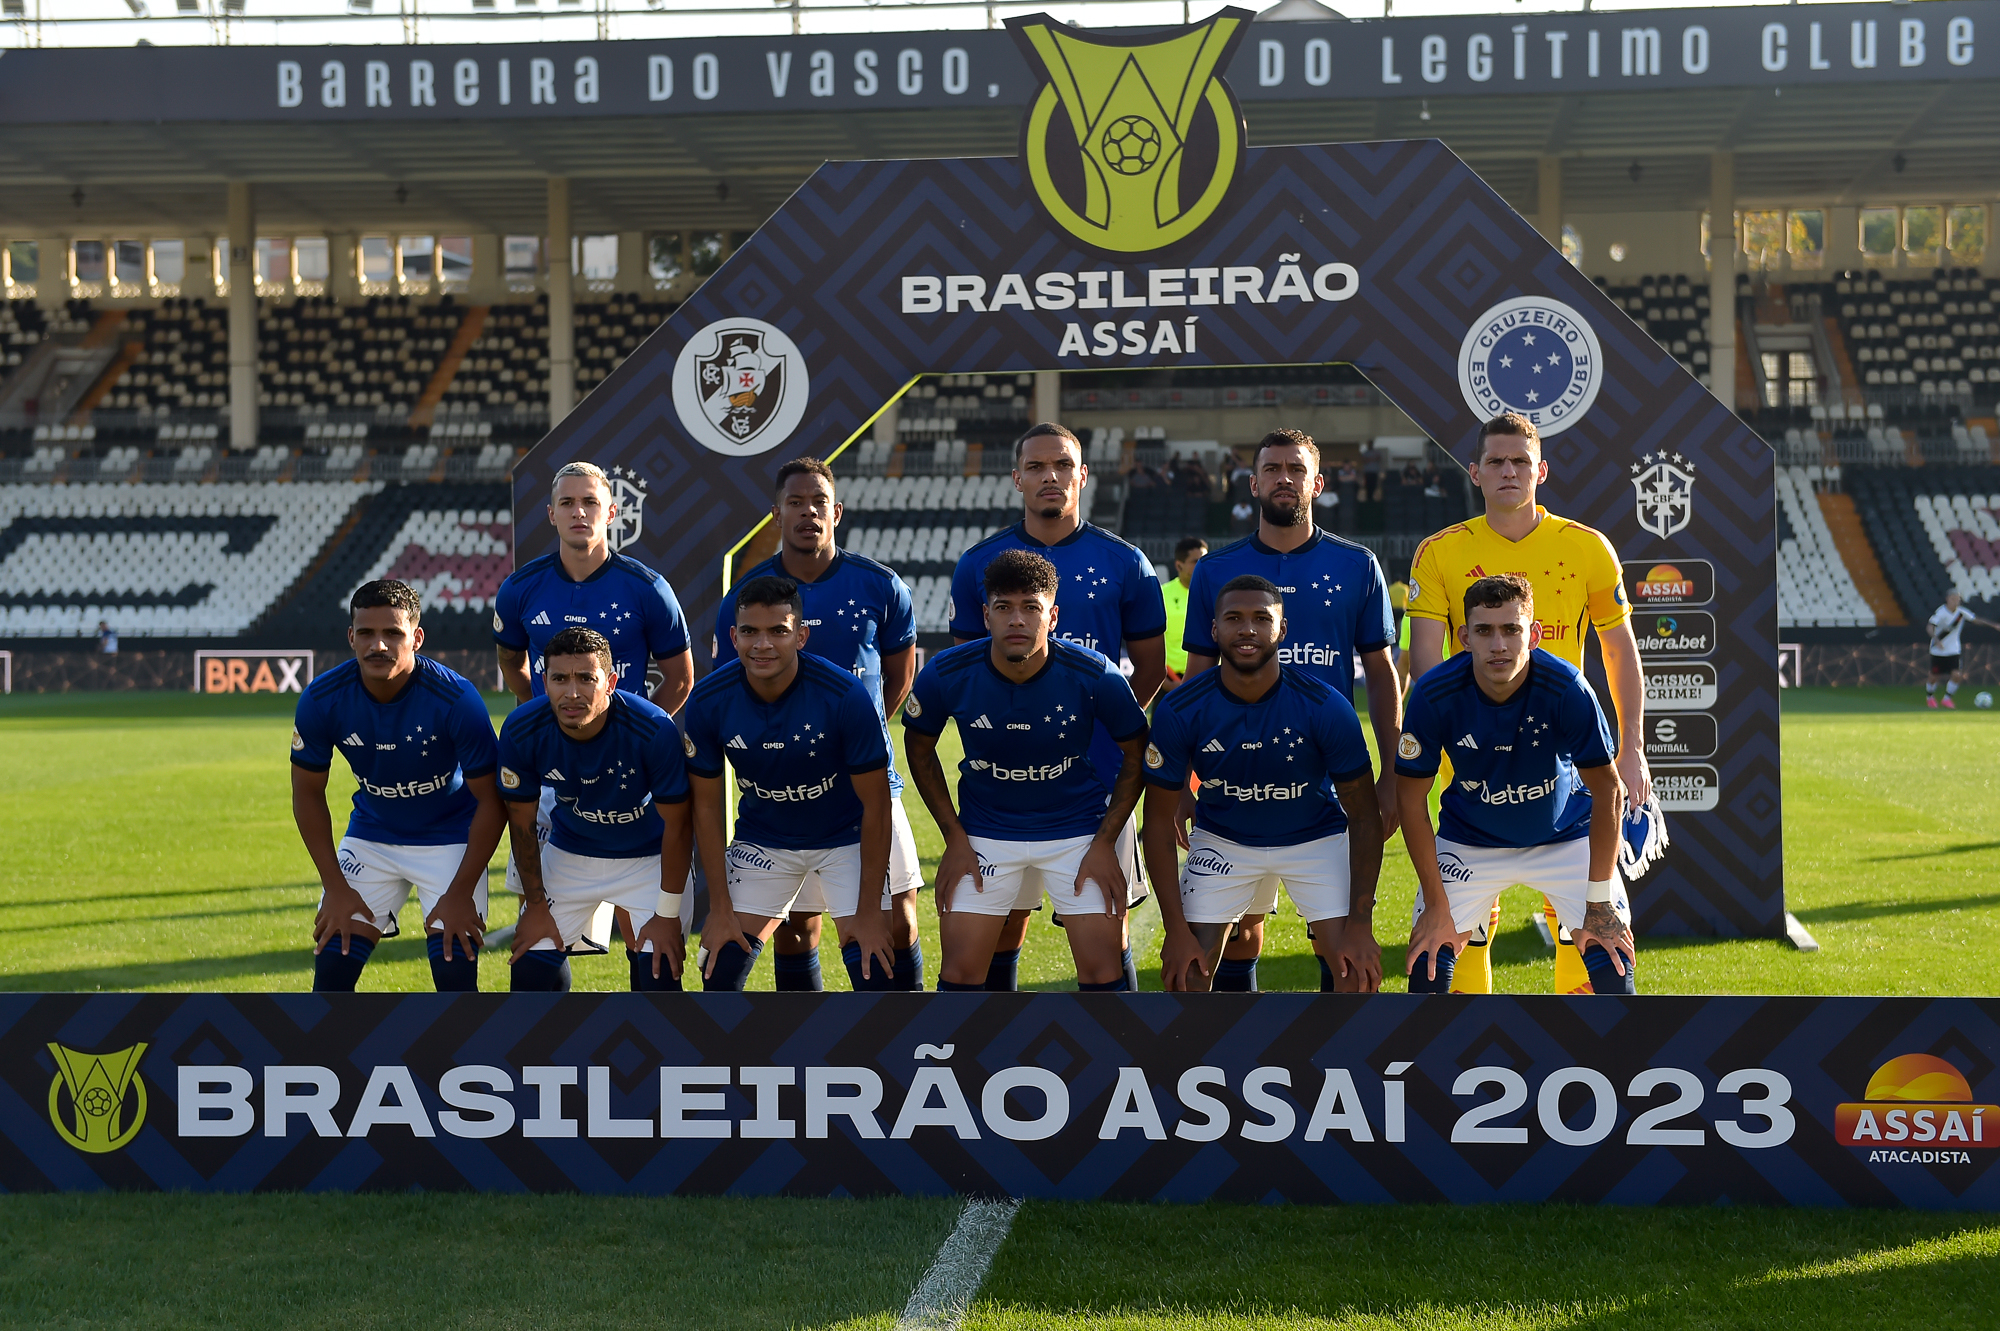 Globo Esporte - Cruzeiro fica próximo do acerto com o meio-campo Matheus  Pereira 